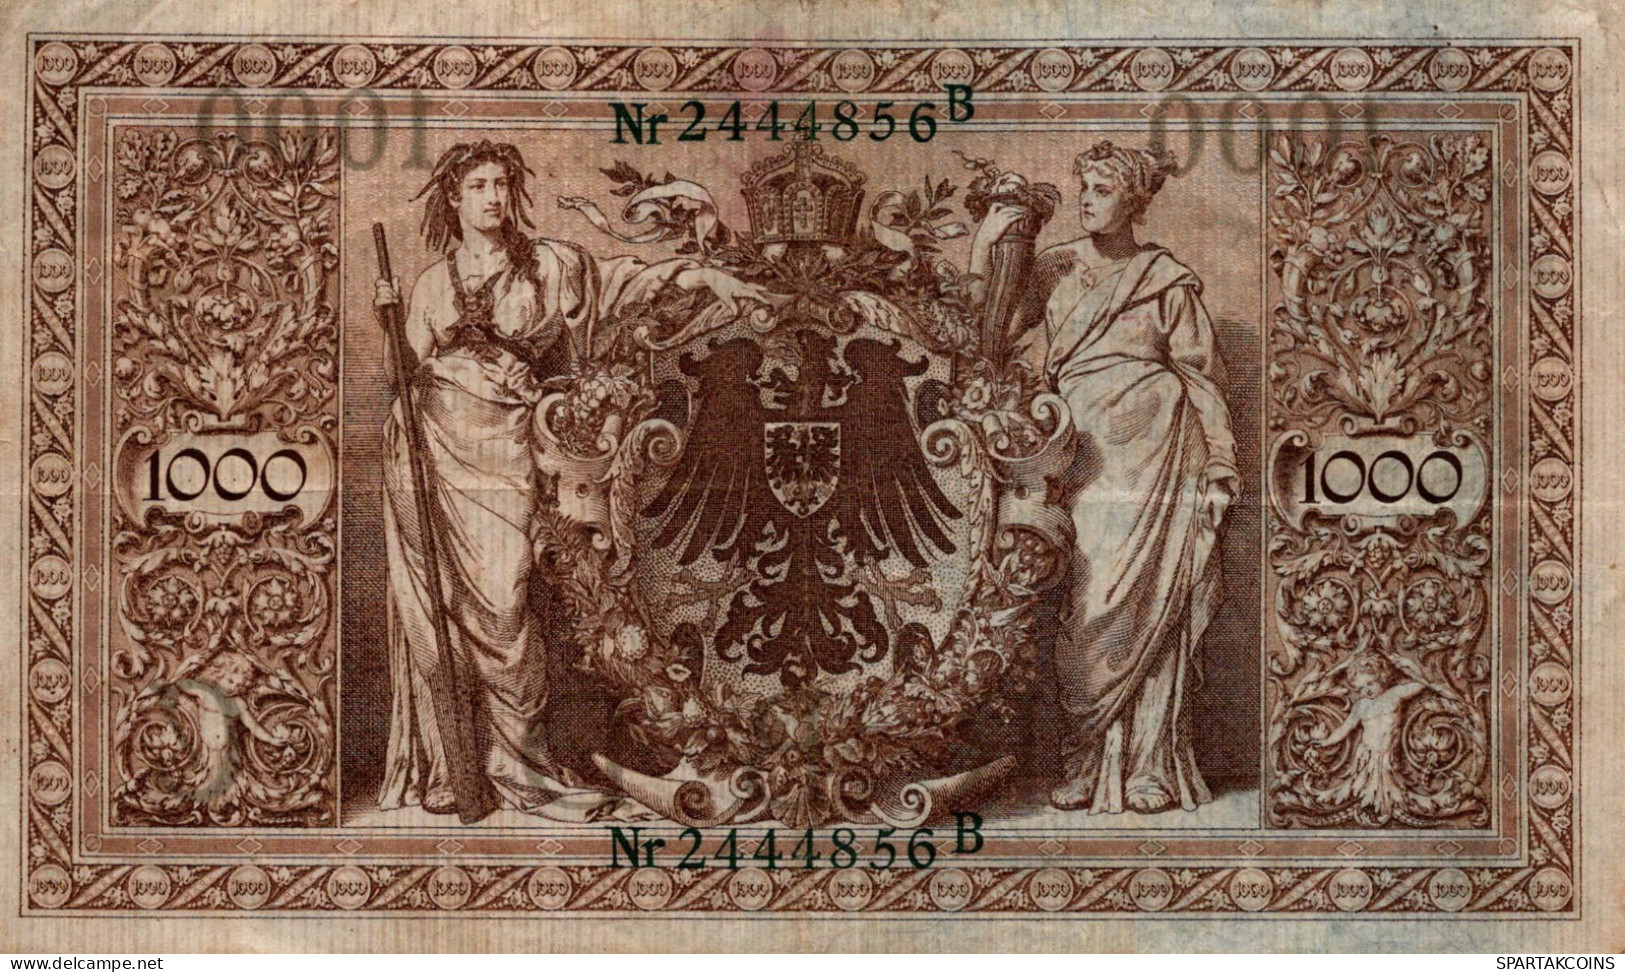 1000 MARK 1910 DEUTSCHLAND Papiergeld Banknote #PL275 - [11] Local Banknote Issues